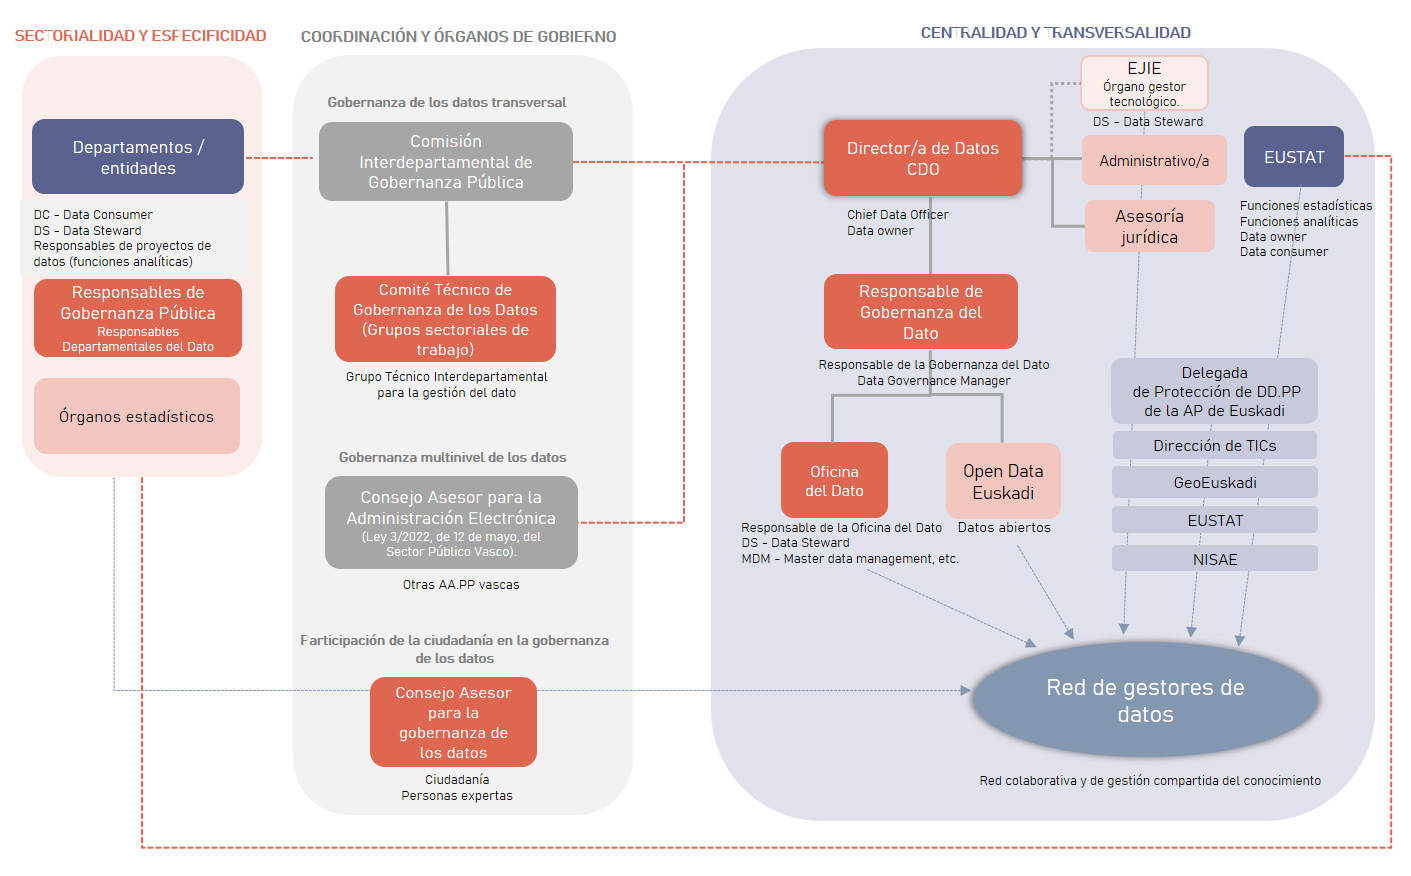 Modelo organizativo propuesto en el documento de la Estrategia de gobernanza de los datos del sector público de la CAE